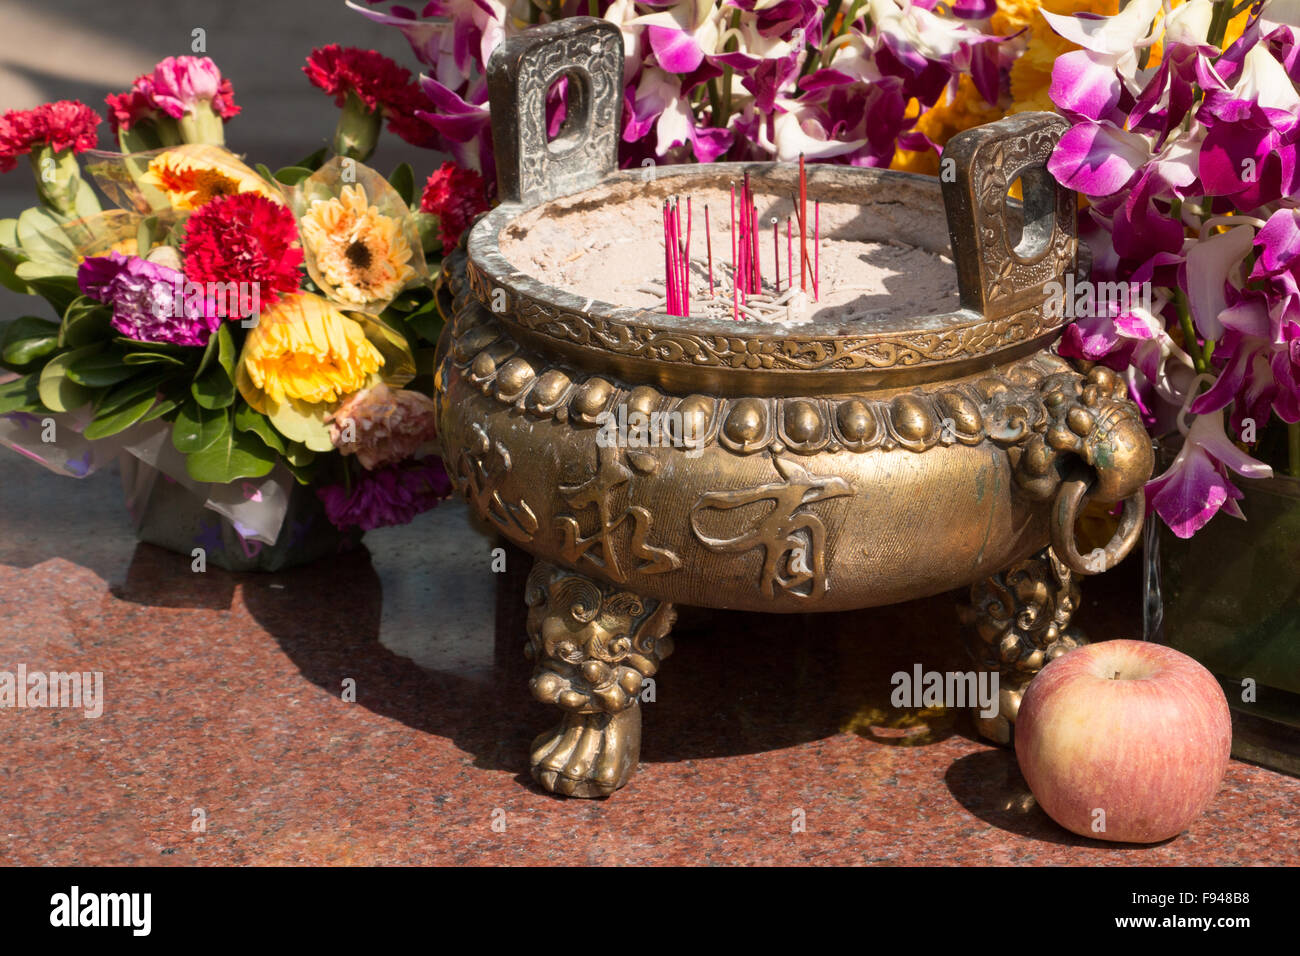 Chinesischen Topf mit Weihrauch hält vor einem farbigen Blumen-Arrangement mit einem Apfel Stockfoto